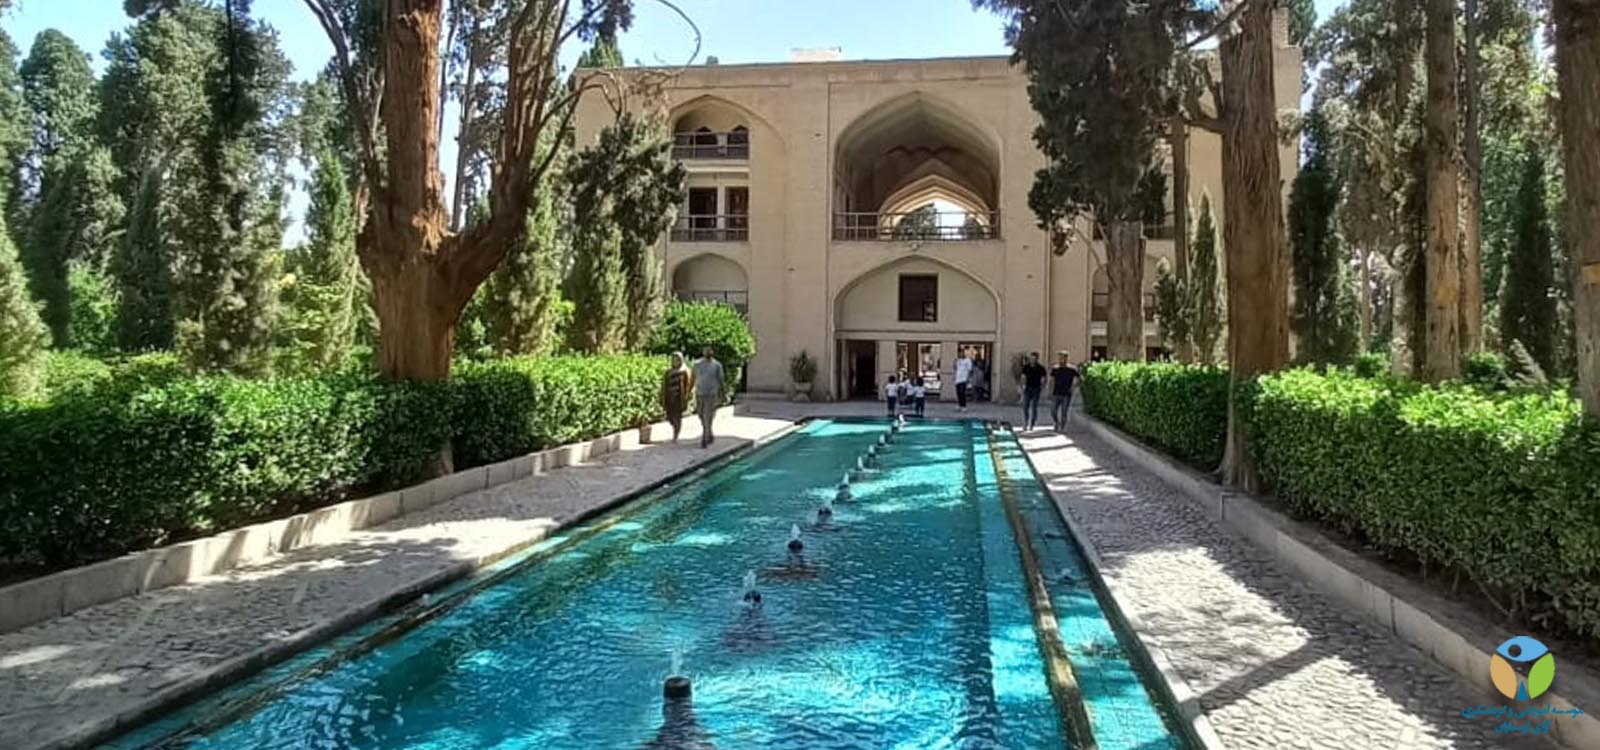 آمادگی آزمون جامع درس معماری ایران و جهان